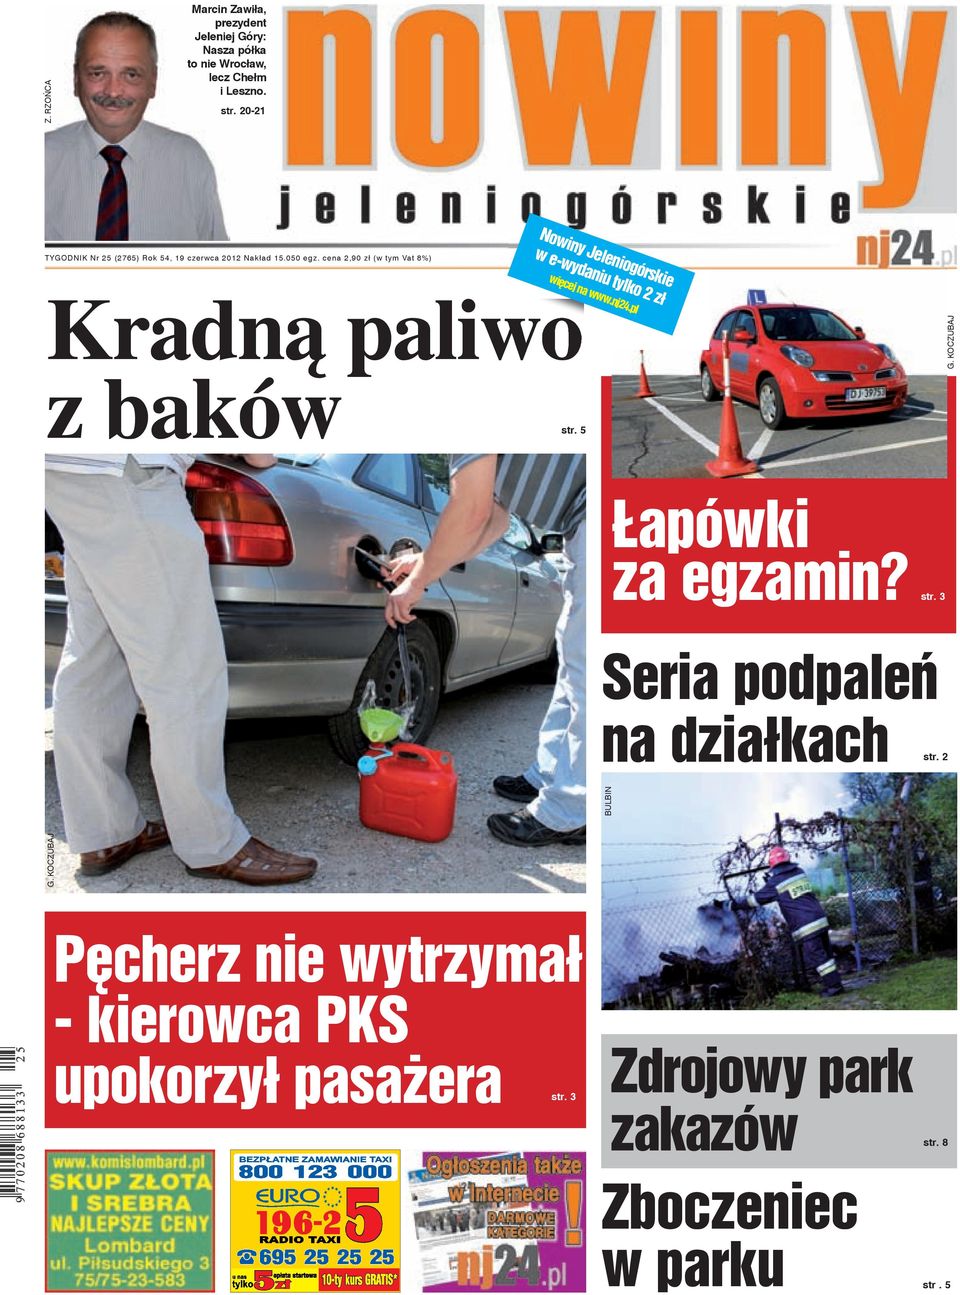 cena 2,90 zł (w tym Vat 8%) Nowiny Jeleniogórskie w e-wydaniu tylko 2 zł więcej na www.nj24.pl Kradną paliwo z baków str. 5 G.